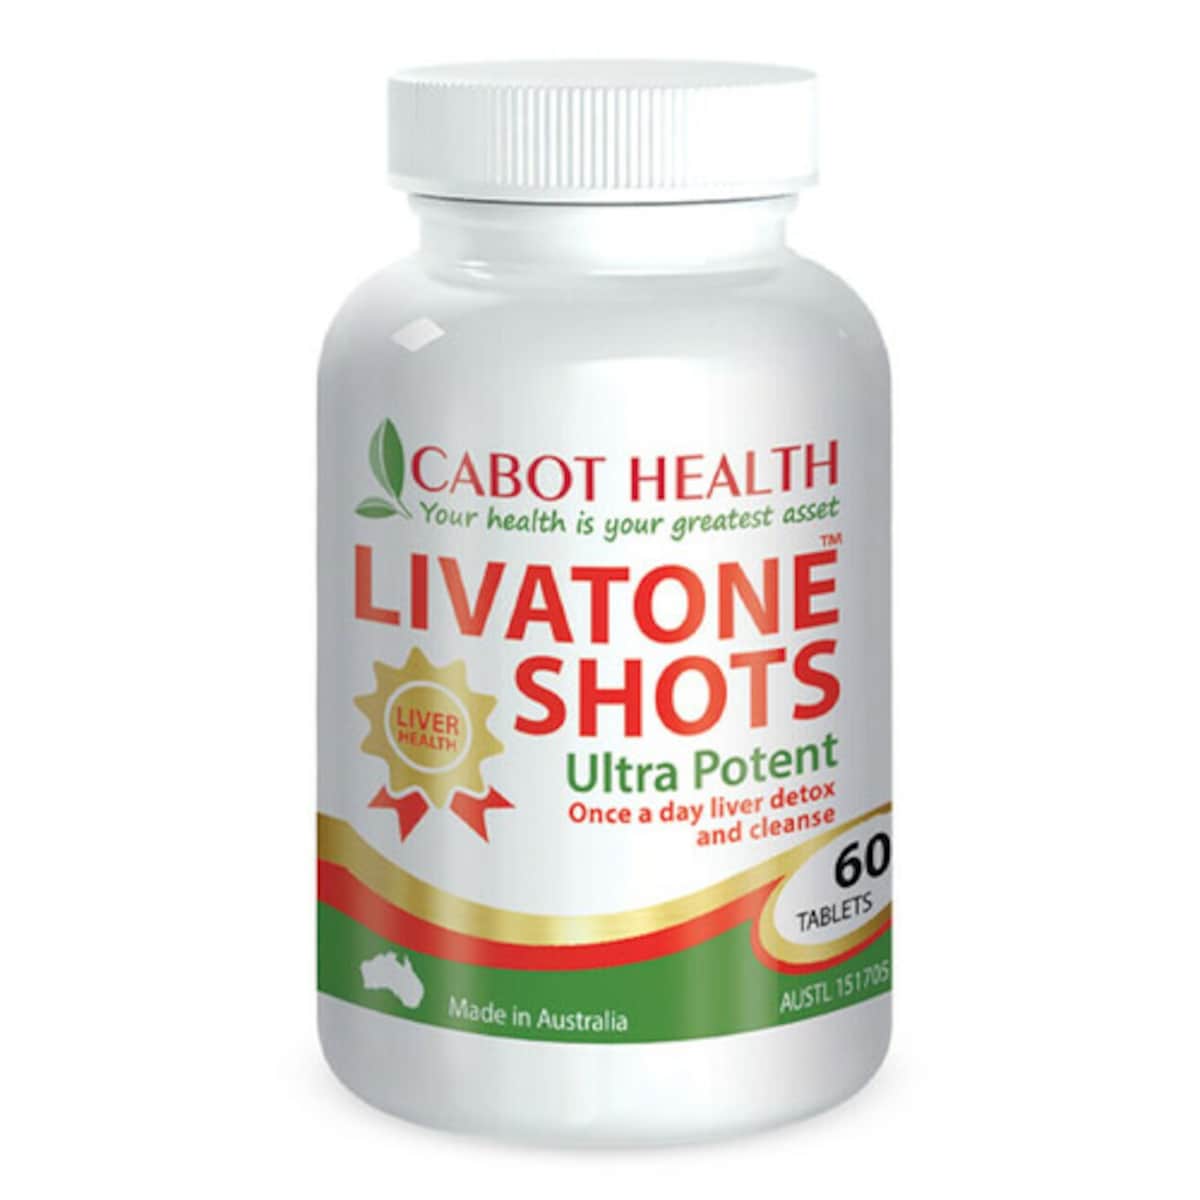 Cabot Health Livatone Shots 60 Tablets Australia